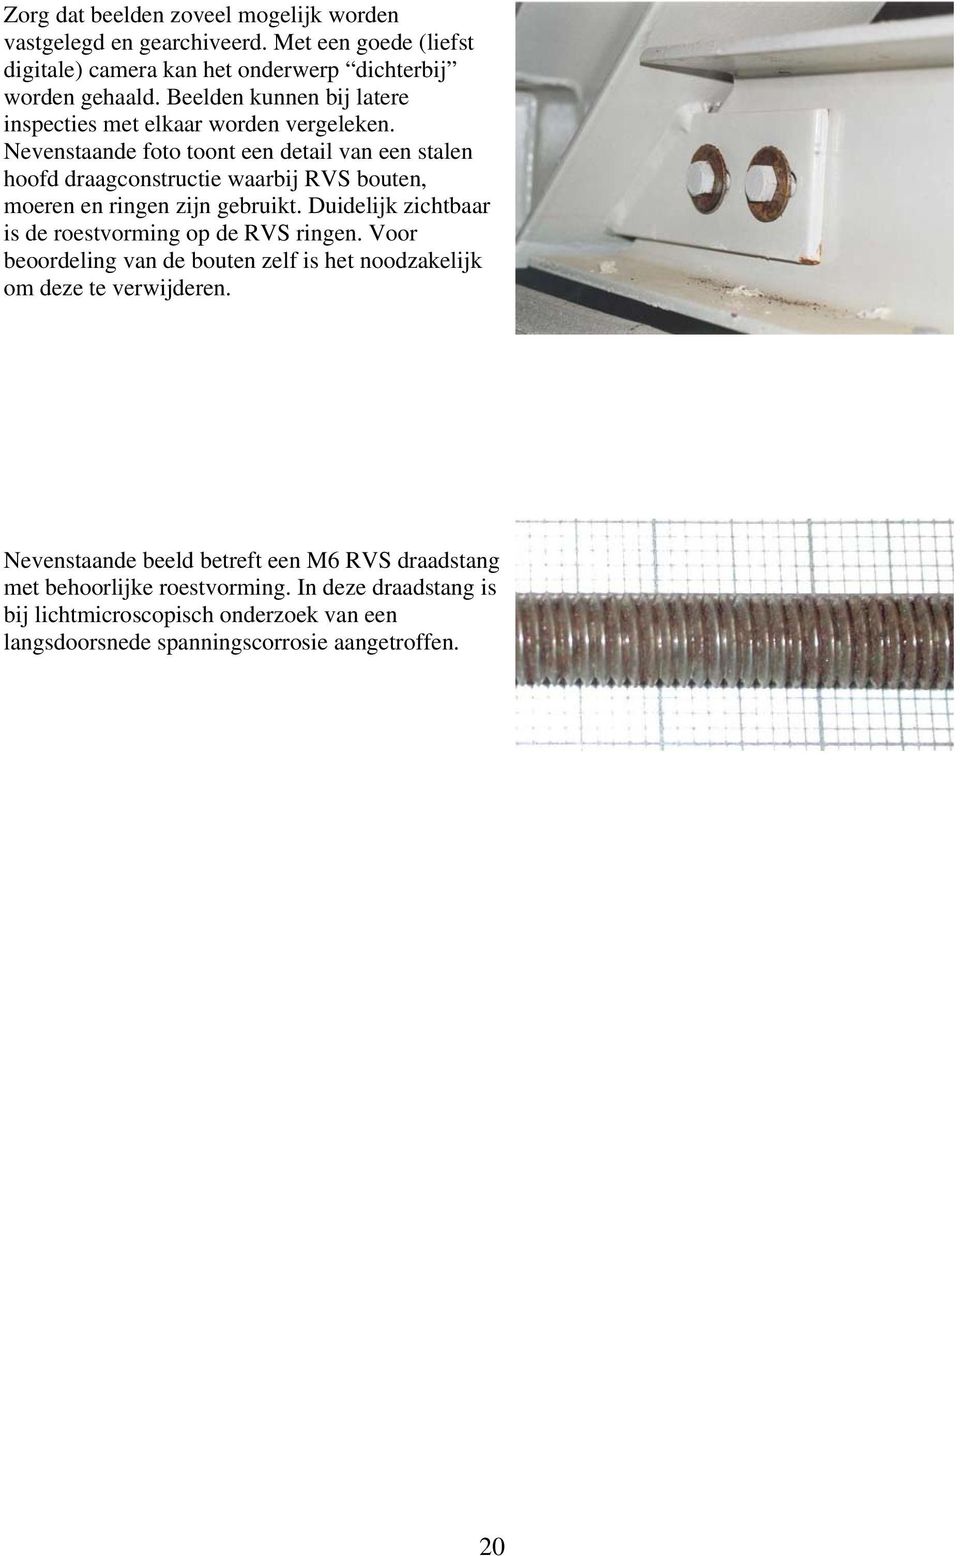 Nevenstaande foto toont een detail van een stalen hoofd draagconstructie waarbij RVS bouten, moeren en ringen zijn gebruikt.